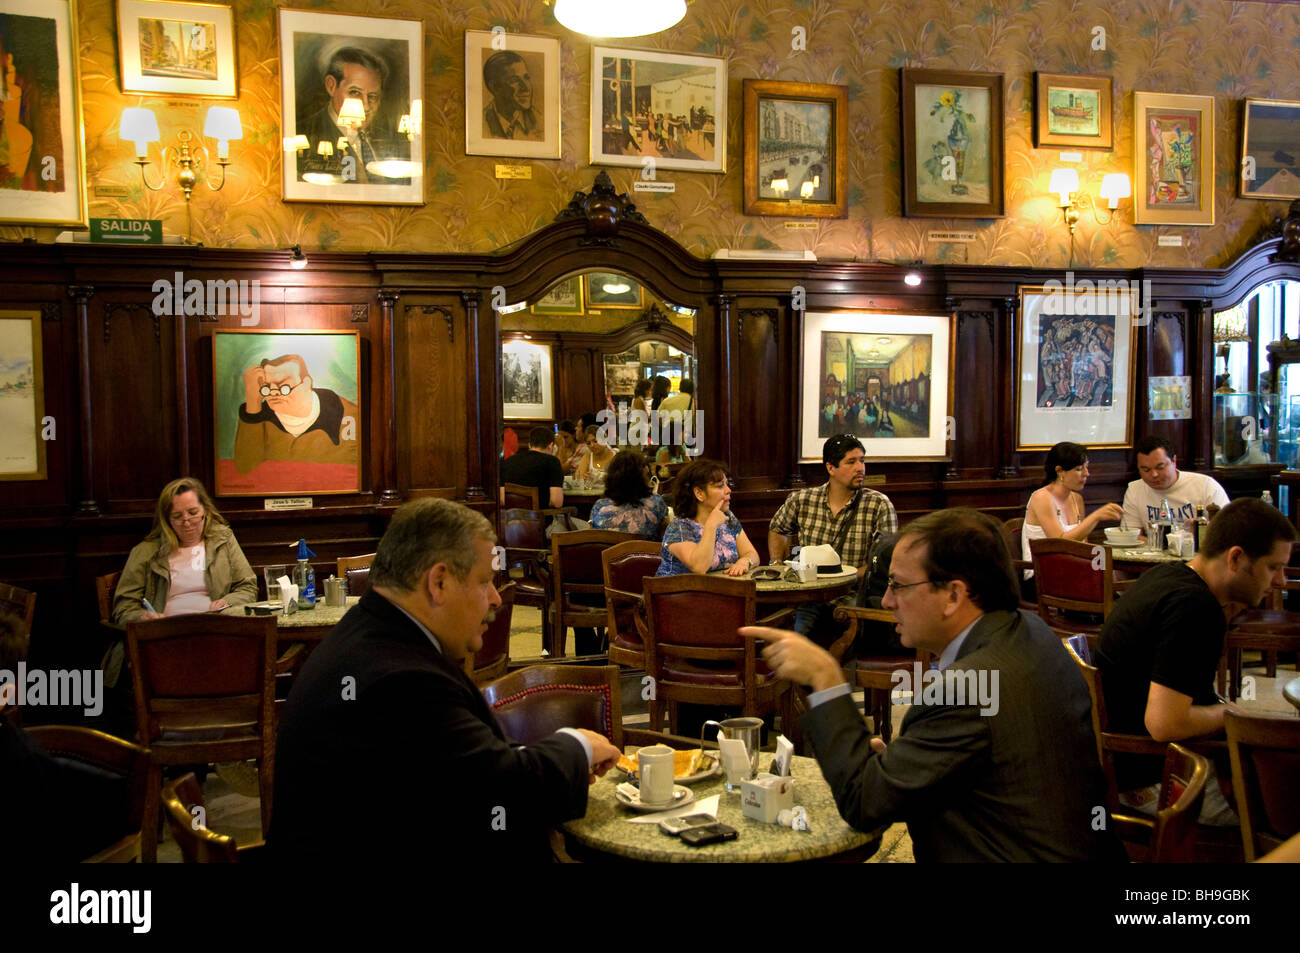 Gran Cafe Torini Buenos Aires Argentina art nouveau de la Ciudad de tango de Carlos Gardel escritor Jorge Luis Borges Foto de stock